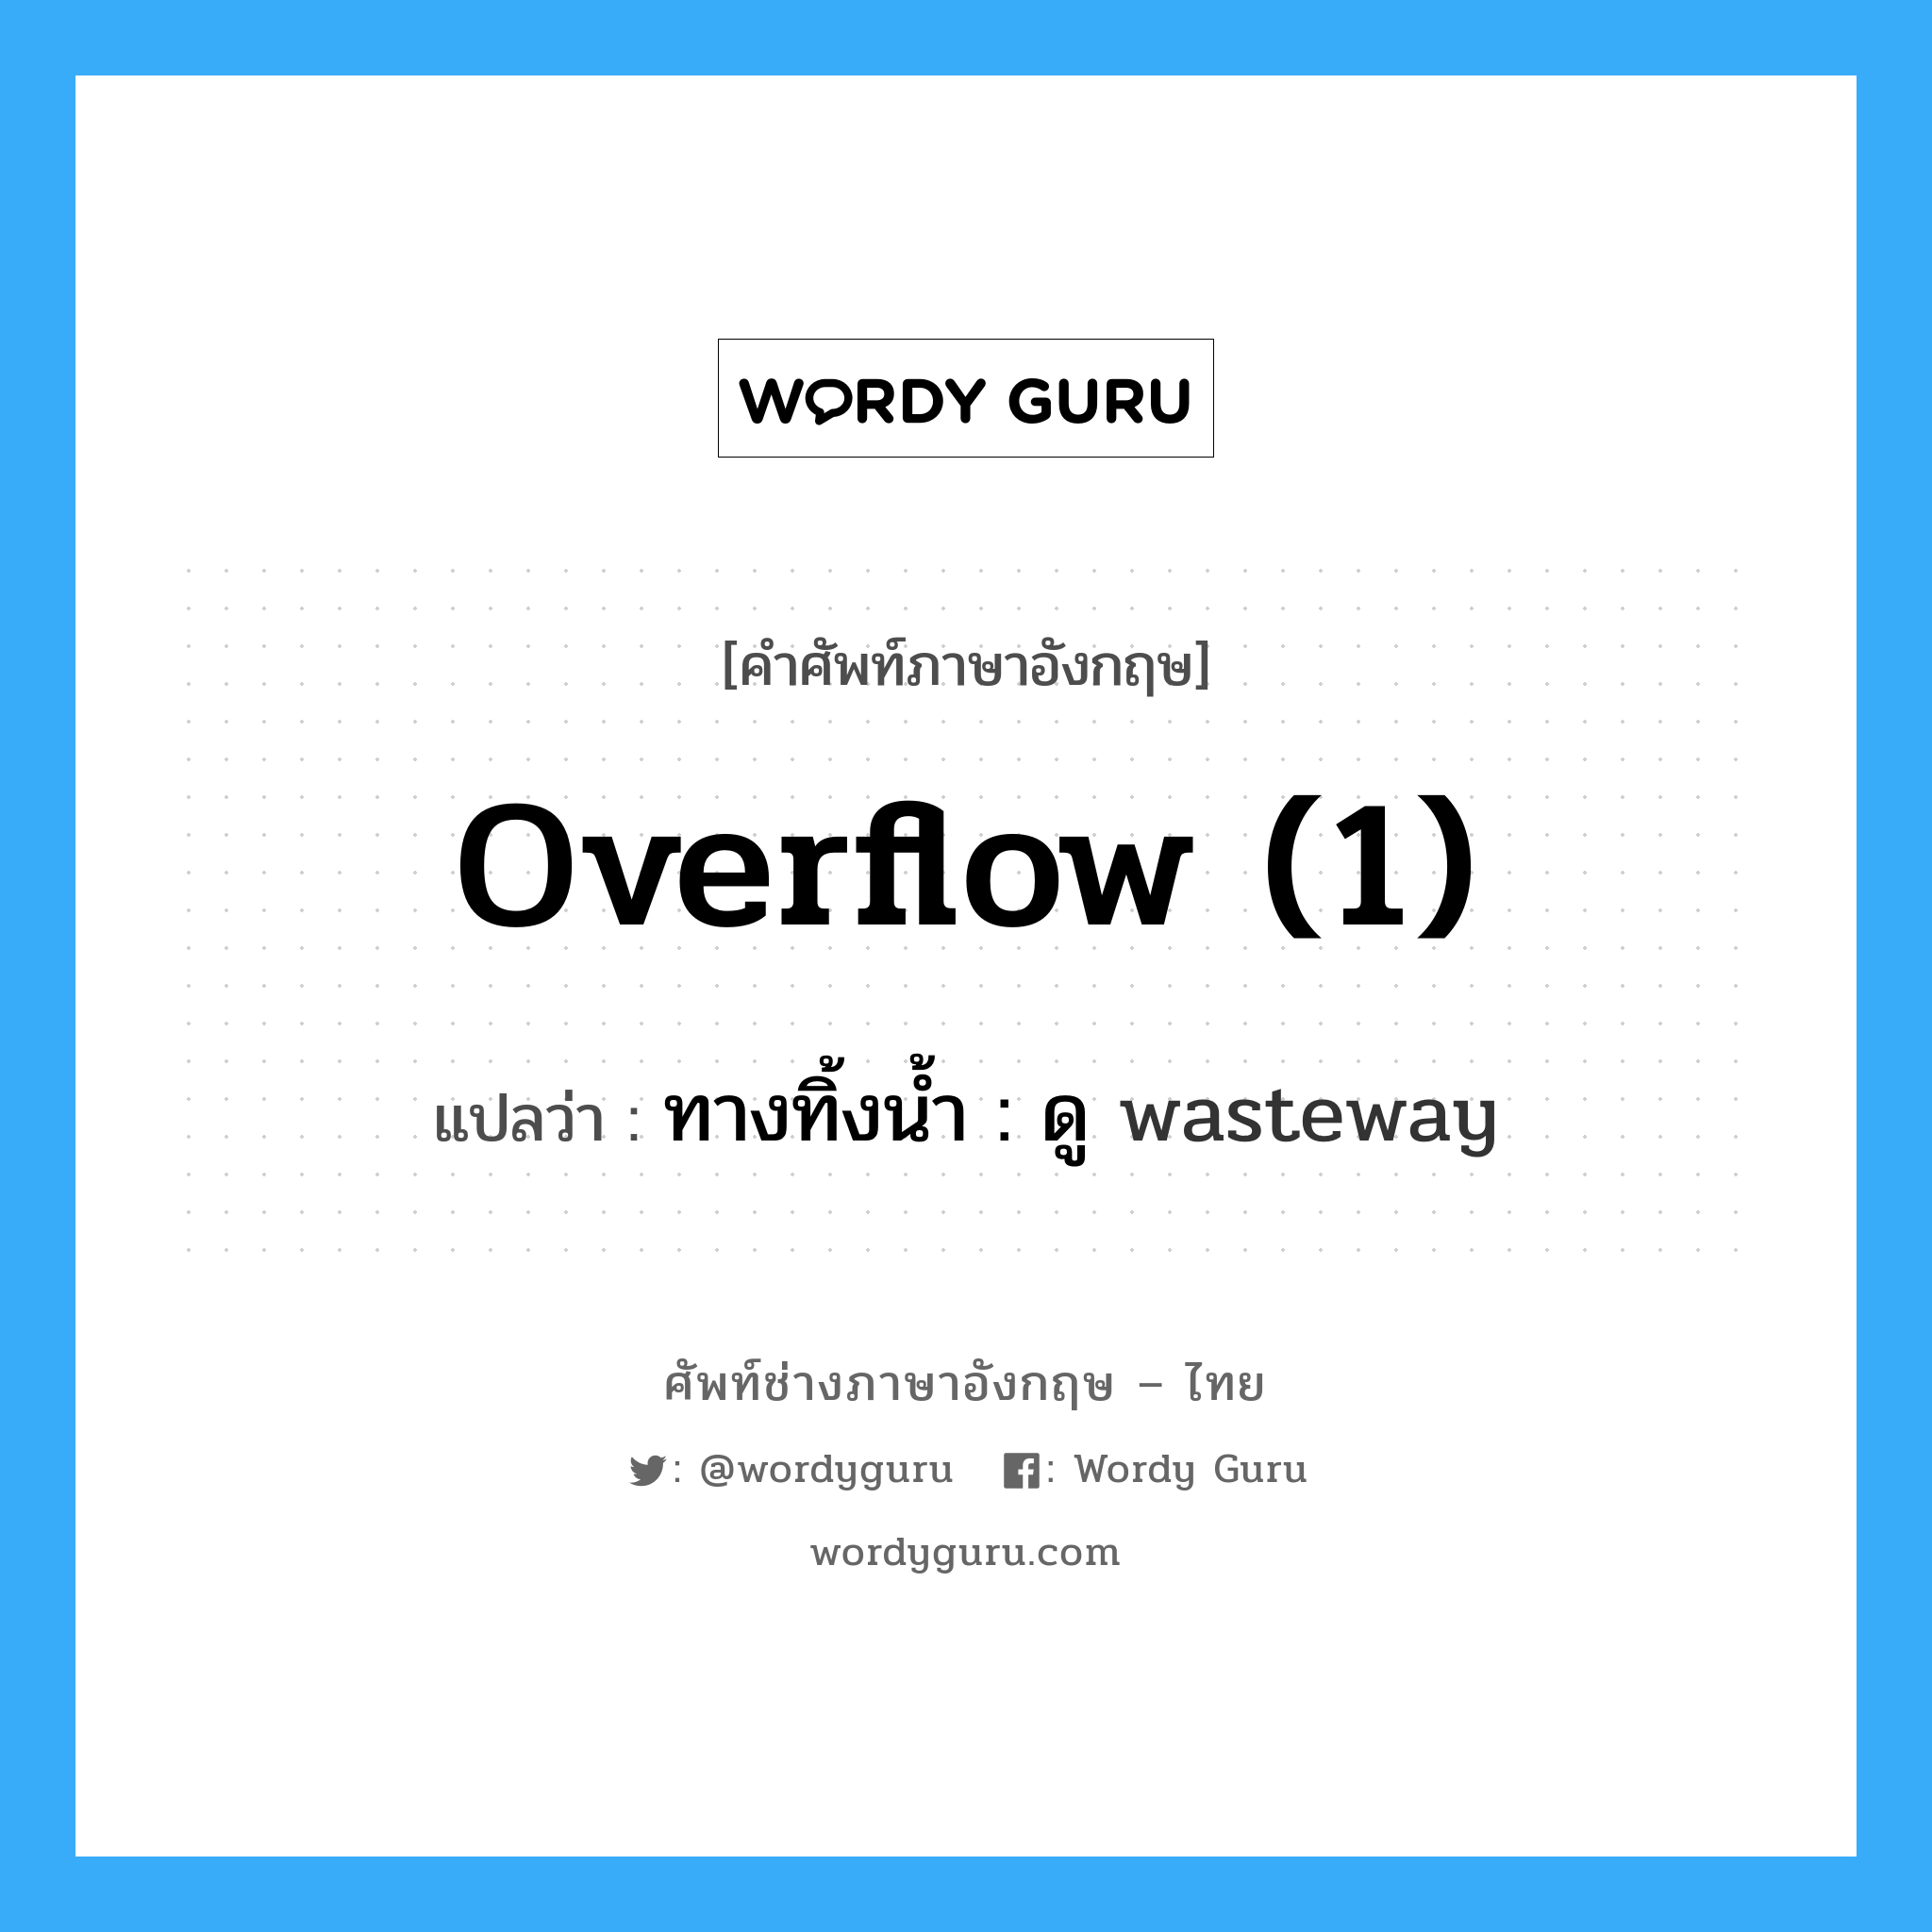 ทางทิ้งน้ำ : ดู wasteway ภาษาอังกฤษ?, คำศัพท์ช่างภาษาอังกฤษ - ไทย ทางทิ้งน้ำ : ดู wasteway คำศัพท์ภาษาอังกฤษ ทางทิ้งน้ำ : ดู wasteway แปลว่า overflow (1)